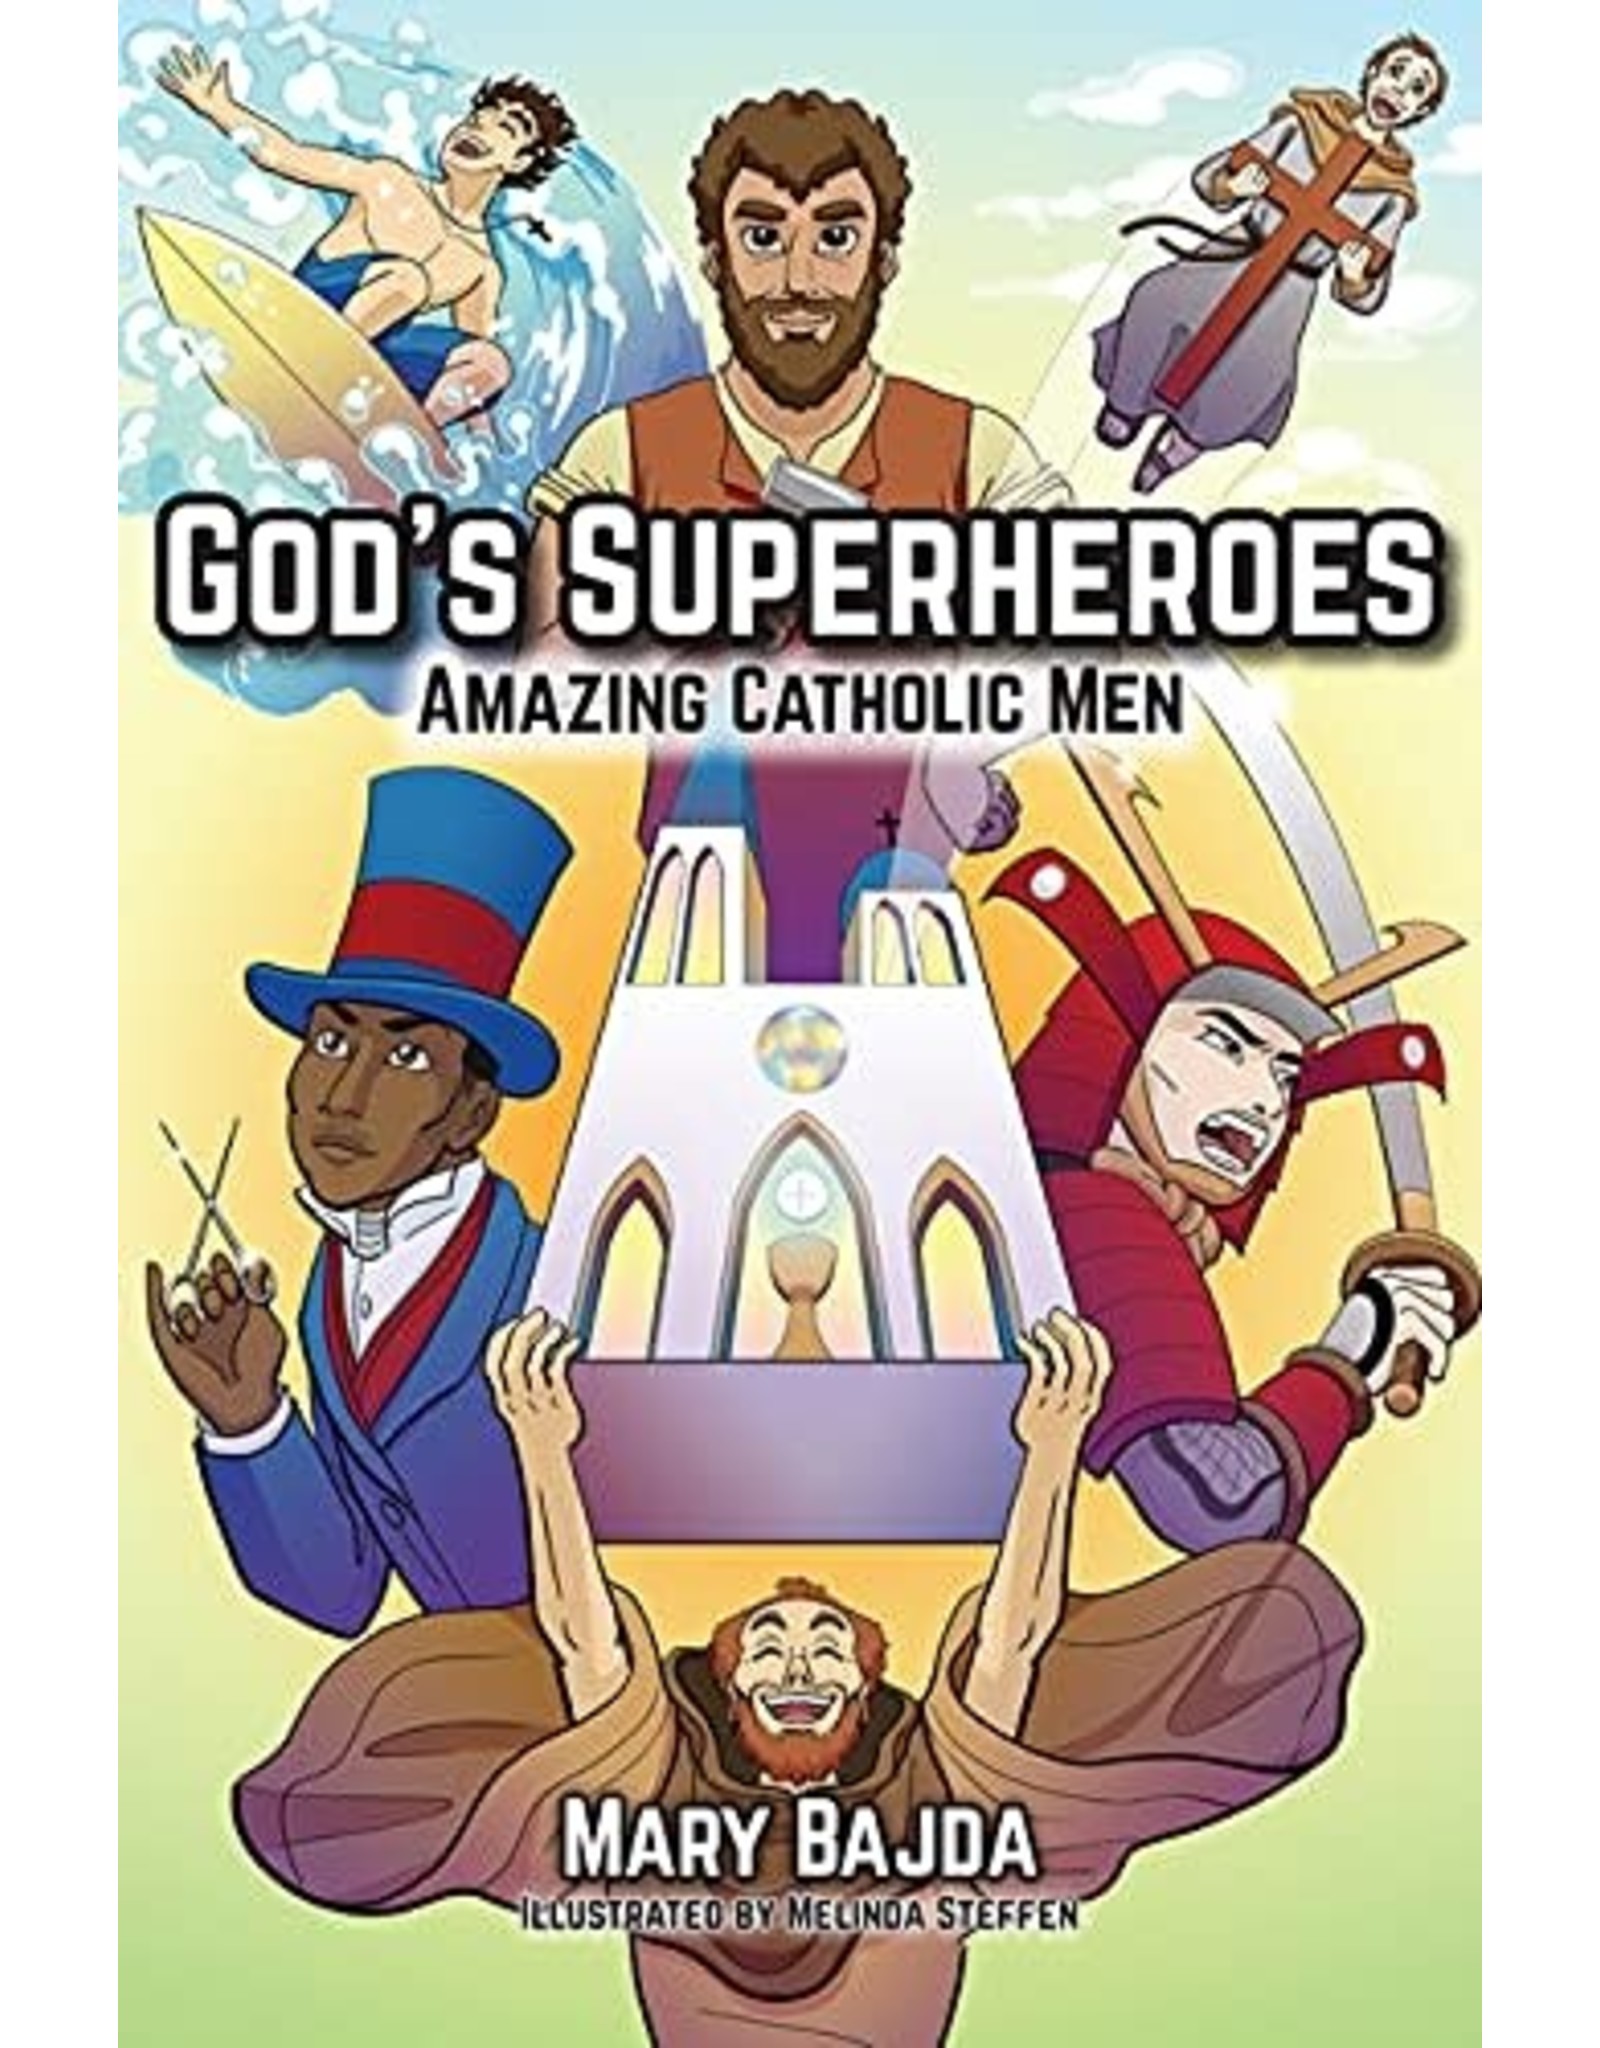 OSV (Our Sunday Visitor) God's Superheroes: Amazing Catholic Men